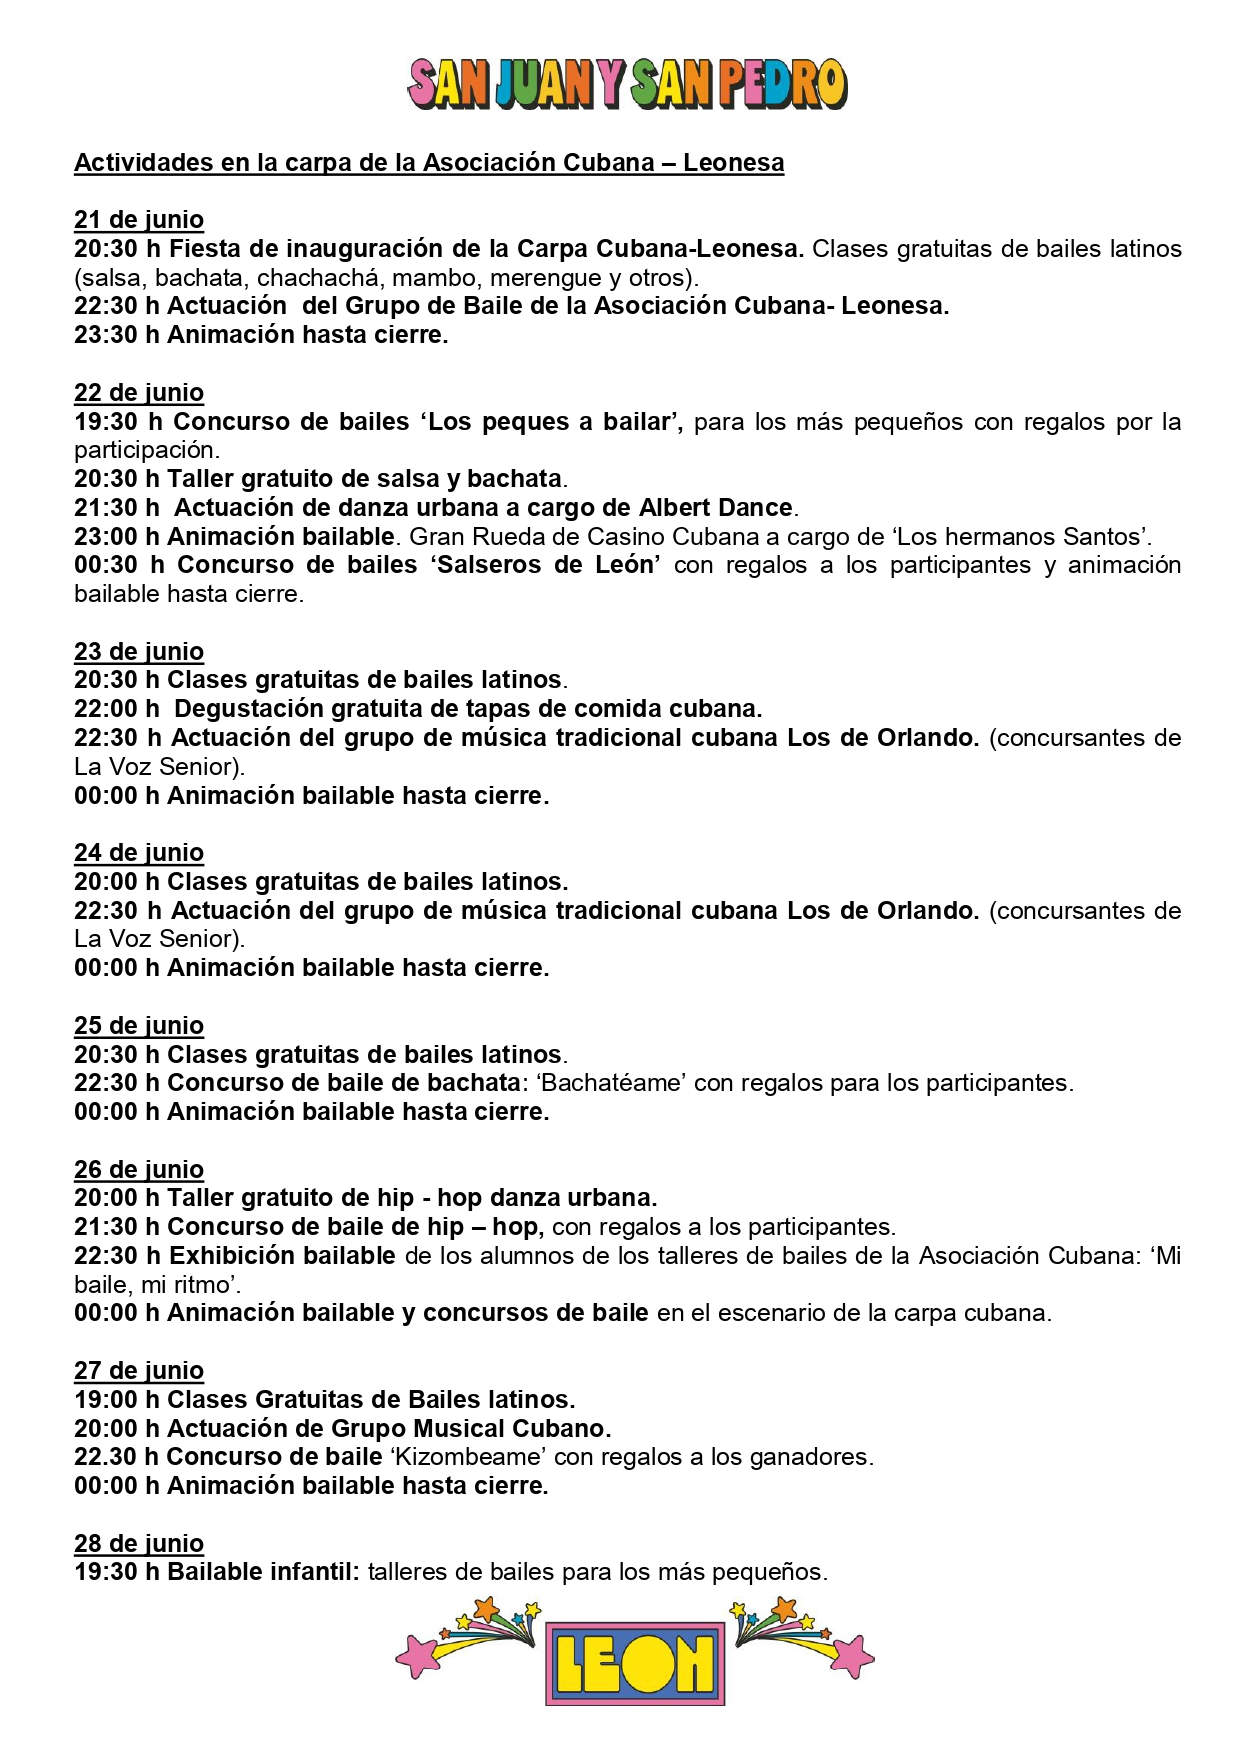 Programa de Fiestas San Juan y San Pedro en León, conciertos, deportes y todas las actividades 25